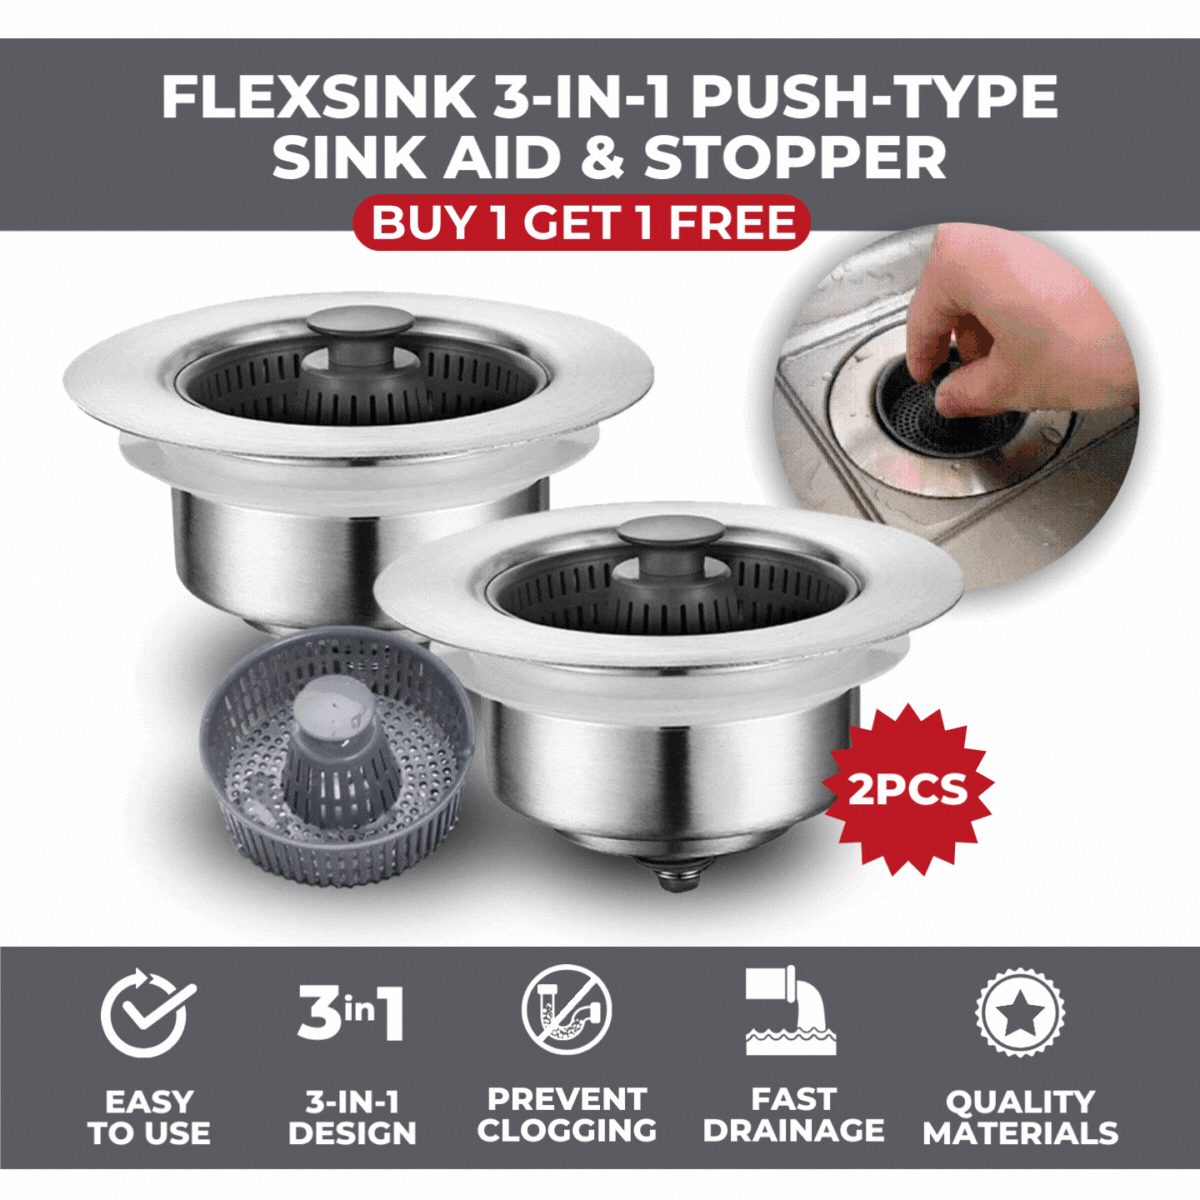 Flexsink 3-in-1 Push-Type Sink Aid & Stopper | BUY 1 GET 1 FREE (2PCS)